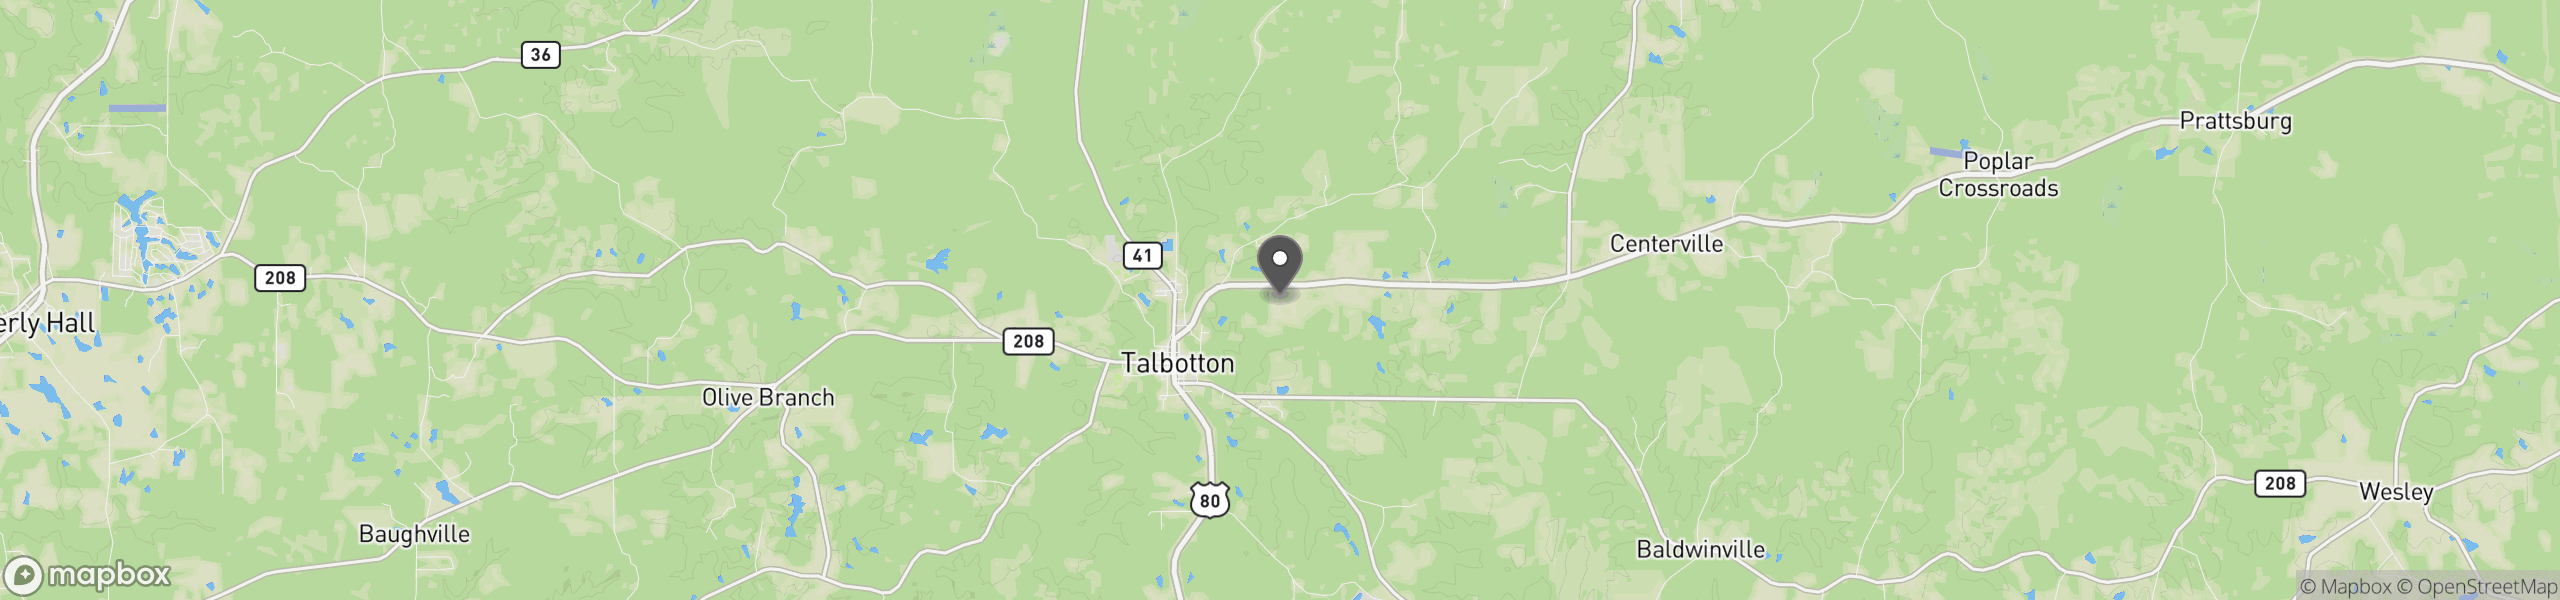 Talbotton, GA